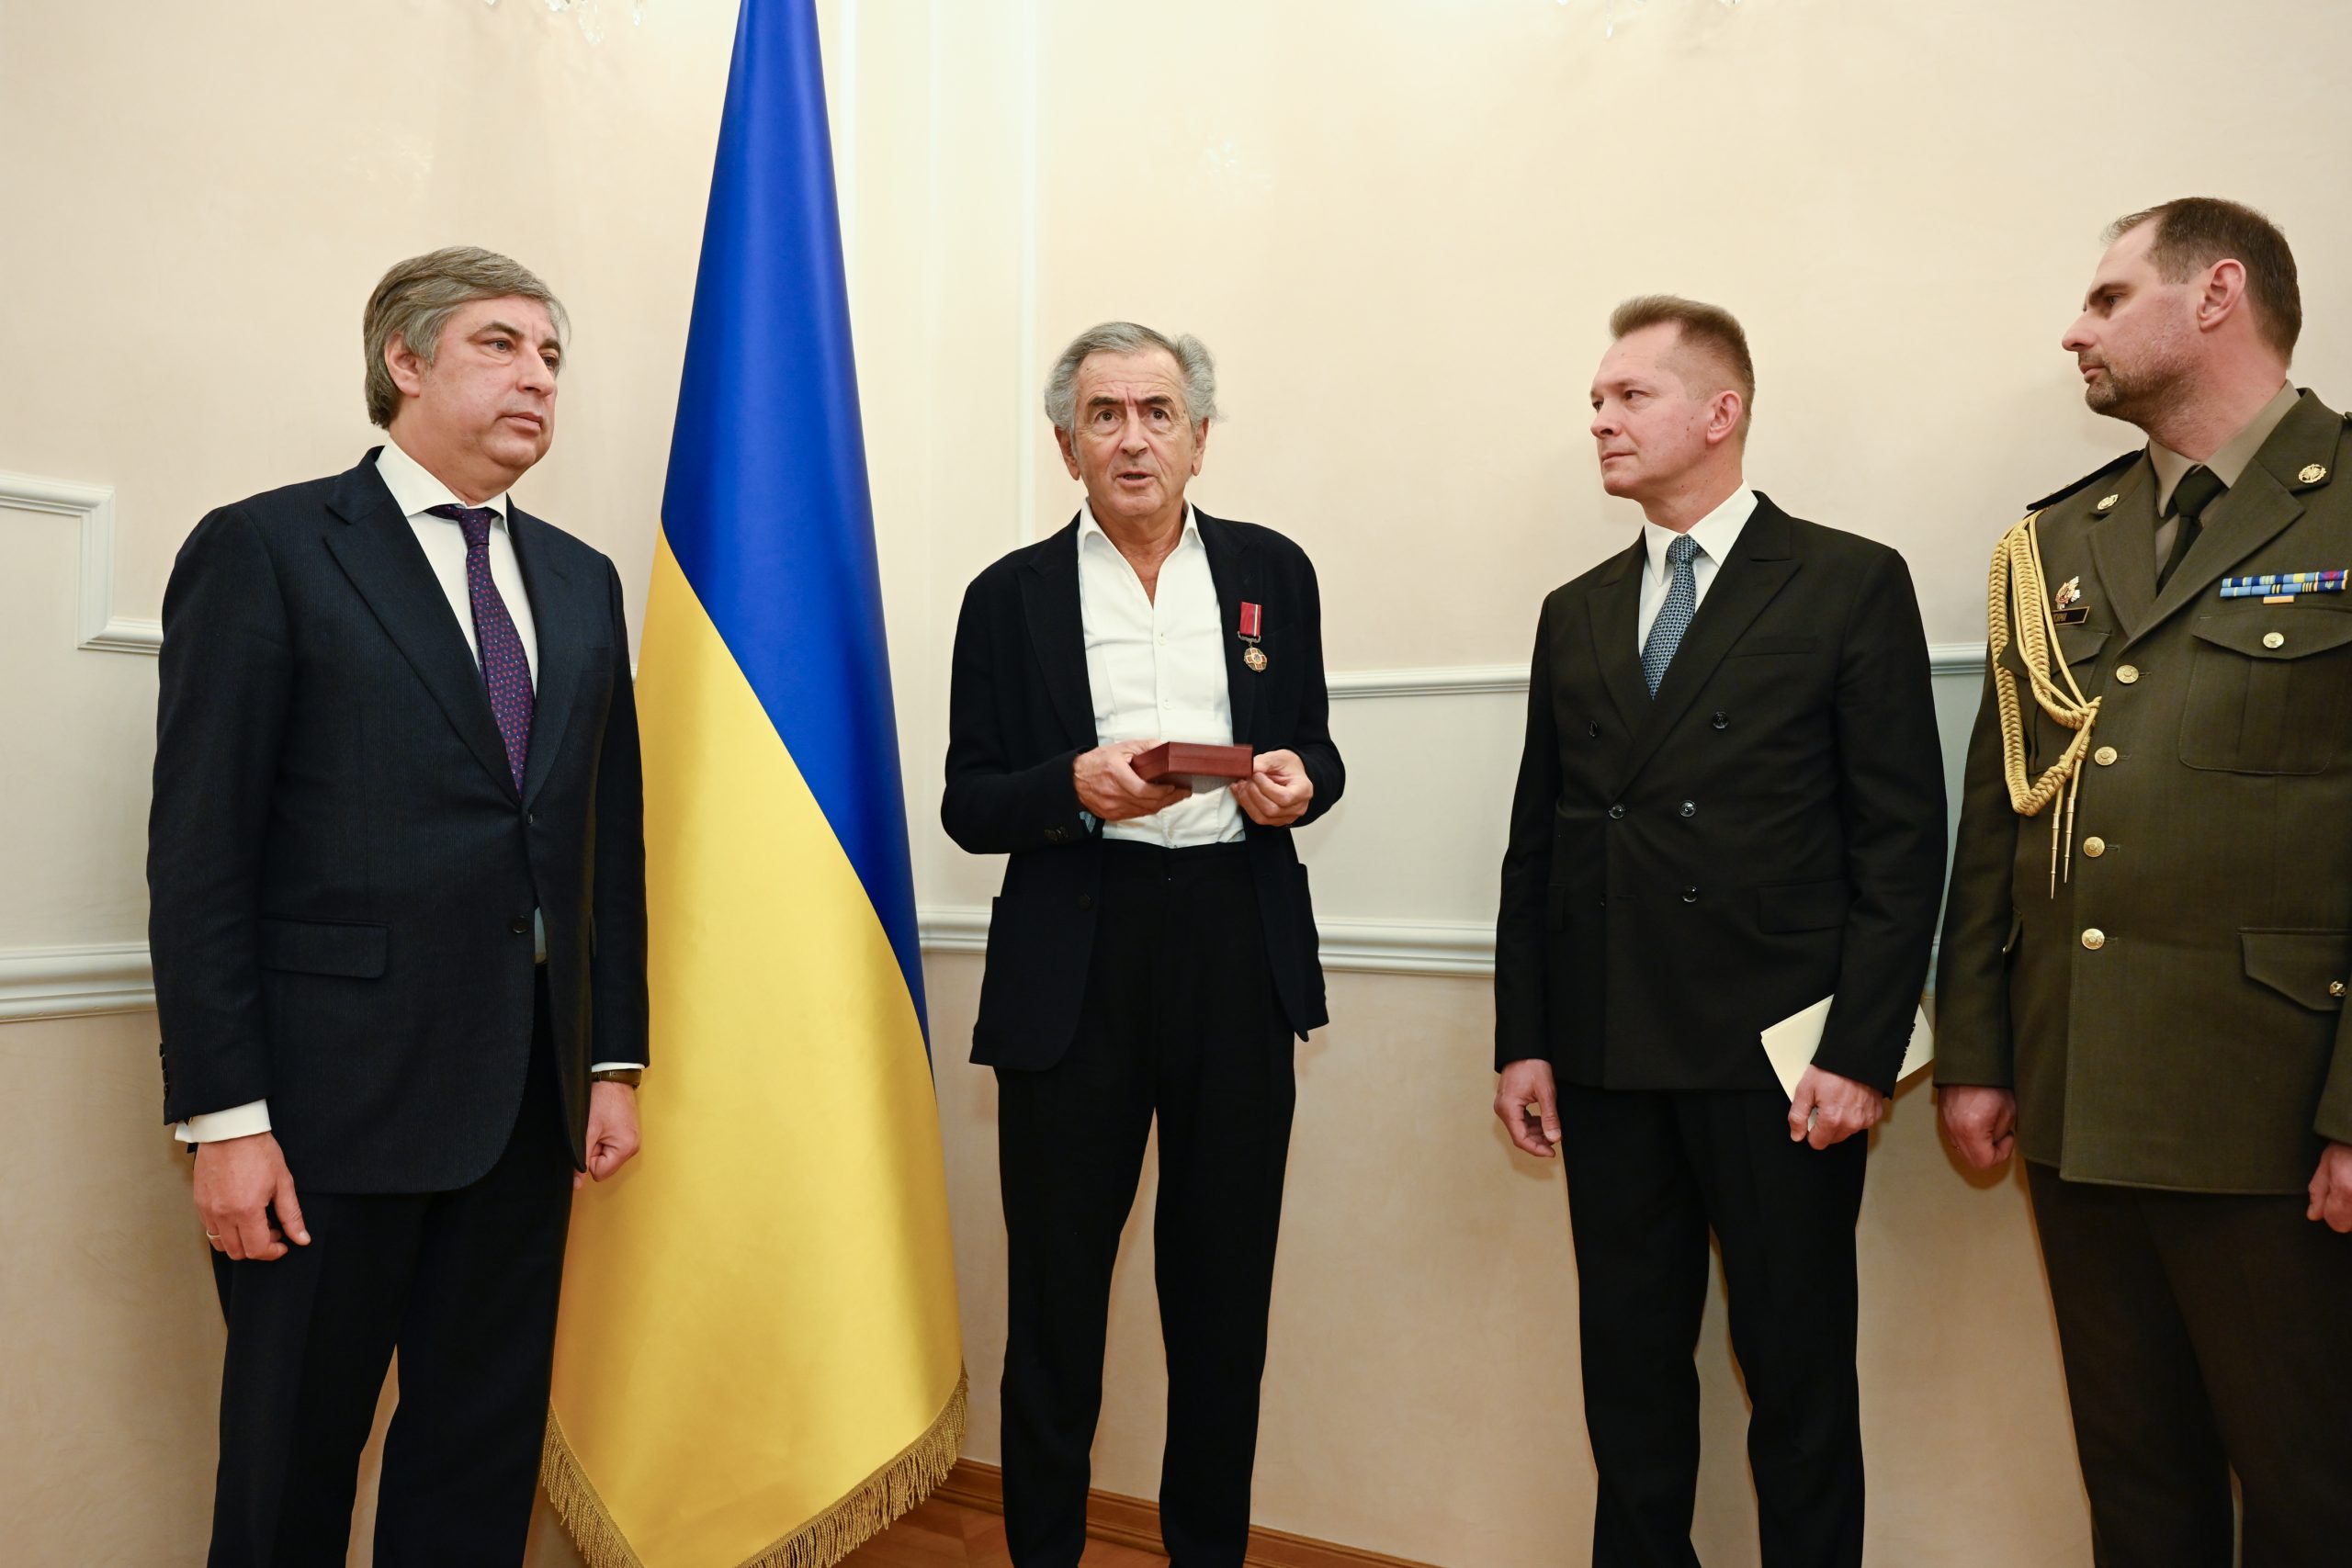 BHL vient de recevoir l'insigne de Chevalier de l'Ordre du Mérite d'Ukraine. À ses côtés, Vadym Omelchenko, ambassadeur d'Ukraine en France.